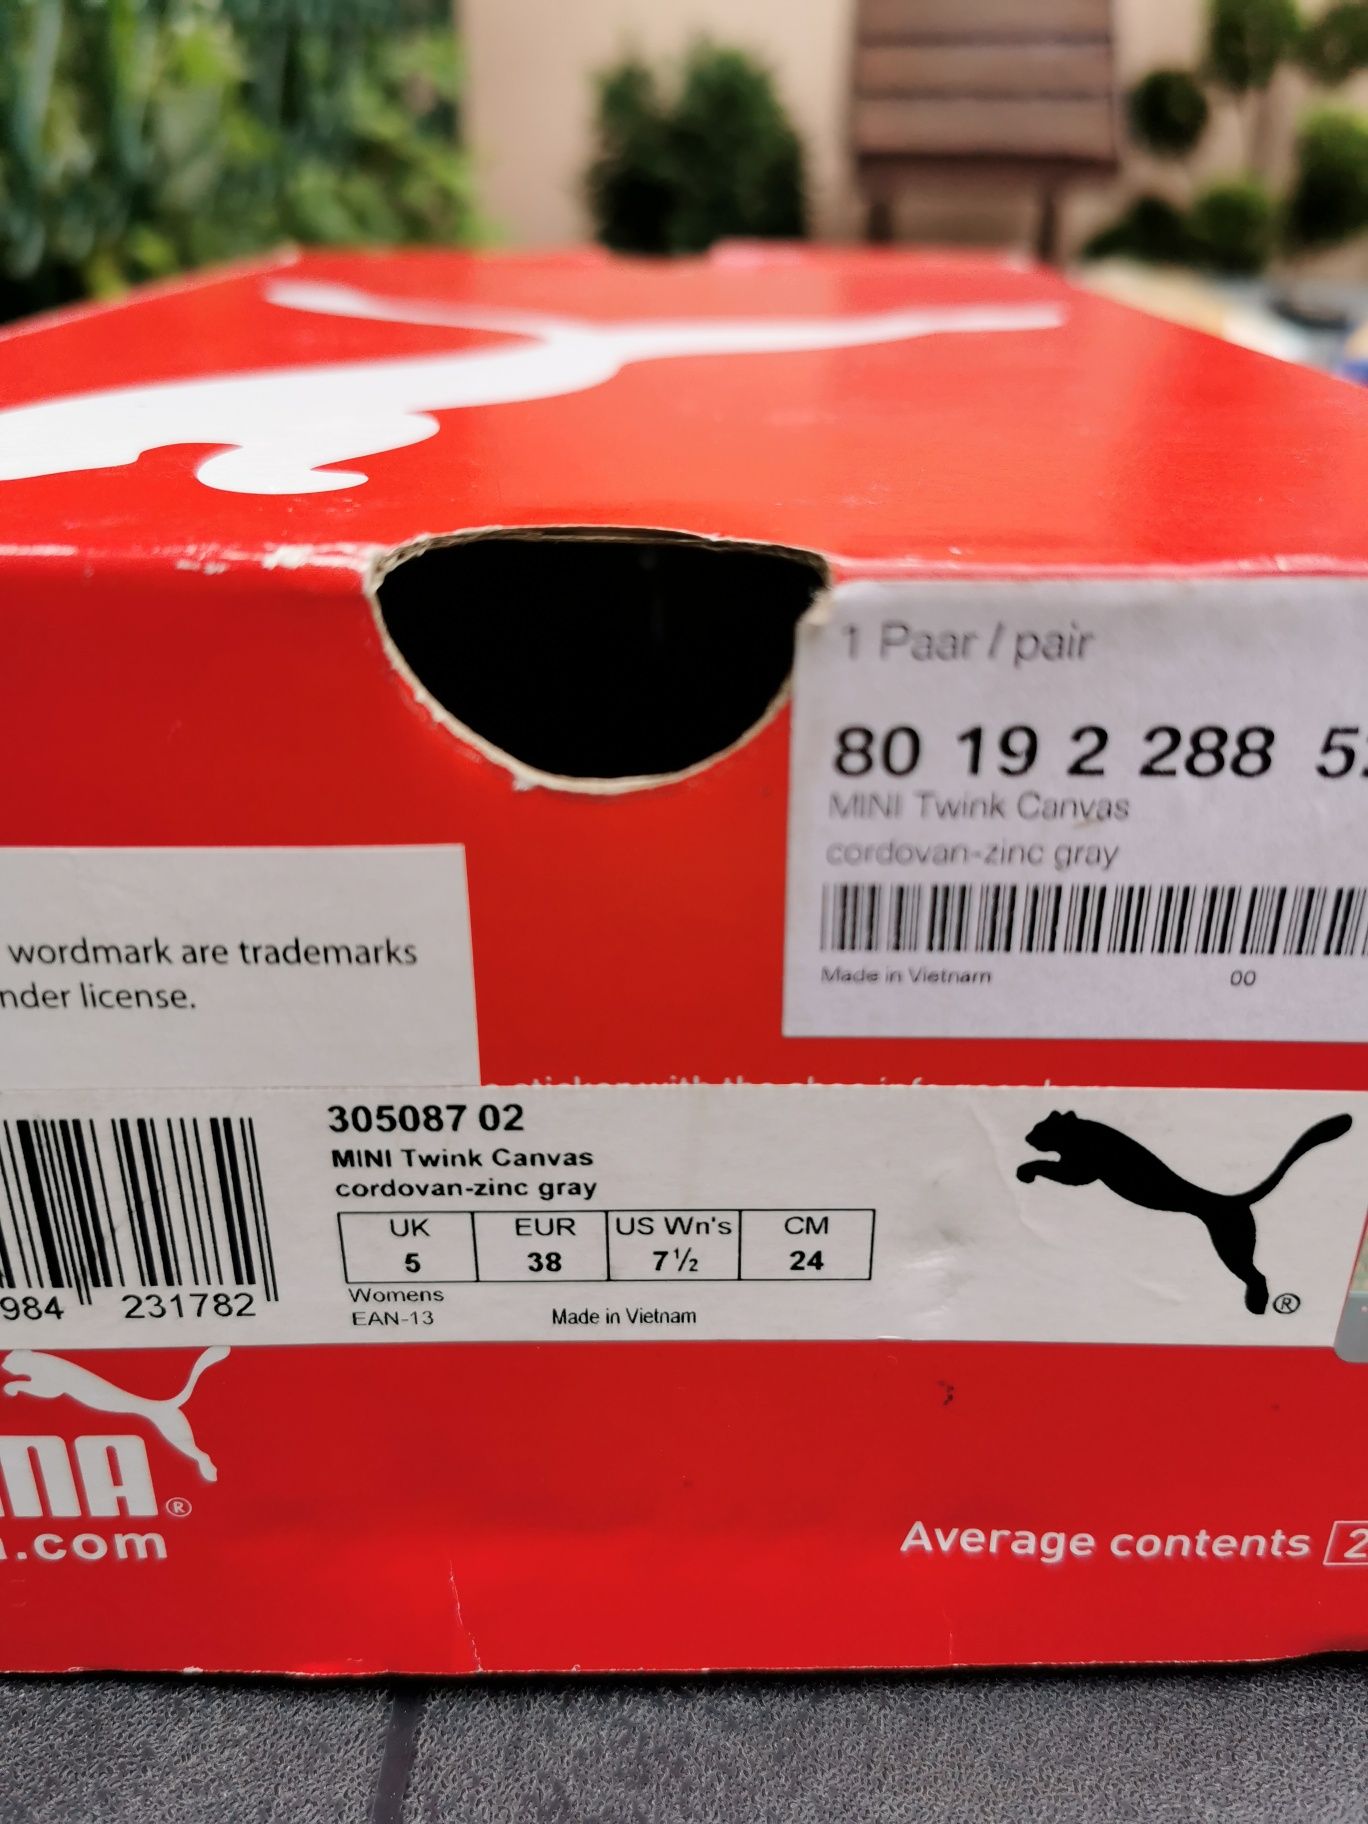 Teniși unisex Mini by Puma, măr. 38,noi, în cutie